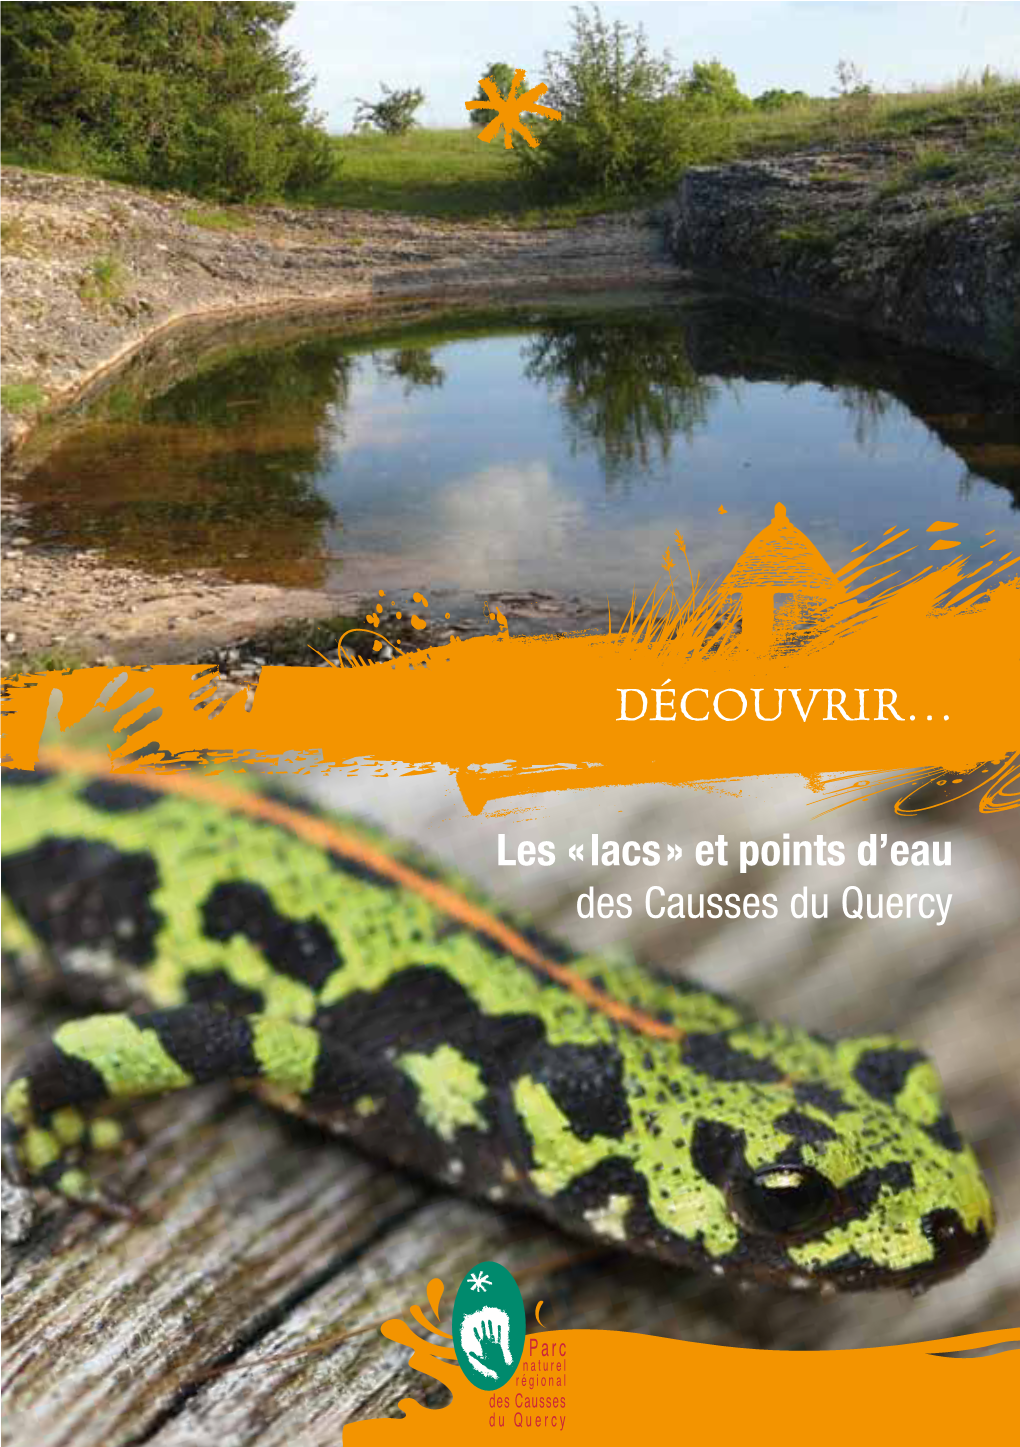 "Découvrir... Les "Lacs" Et Points D'eau Des Causses Du Quercy"